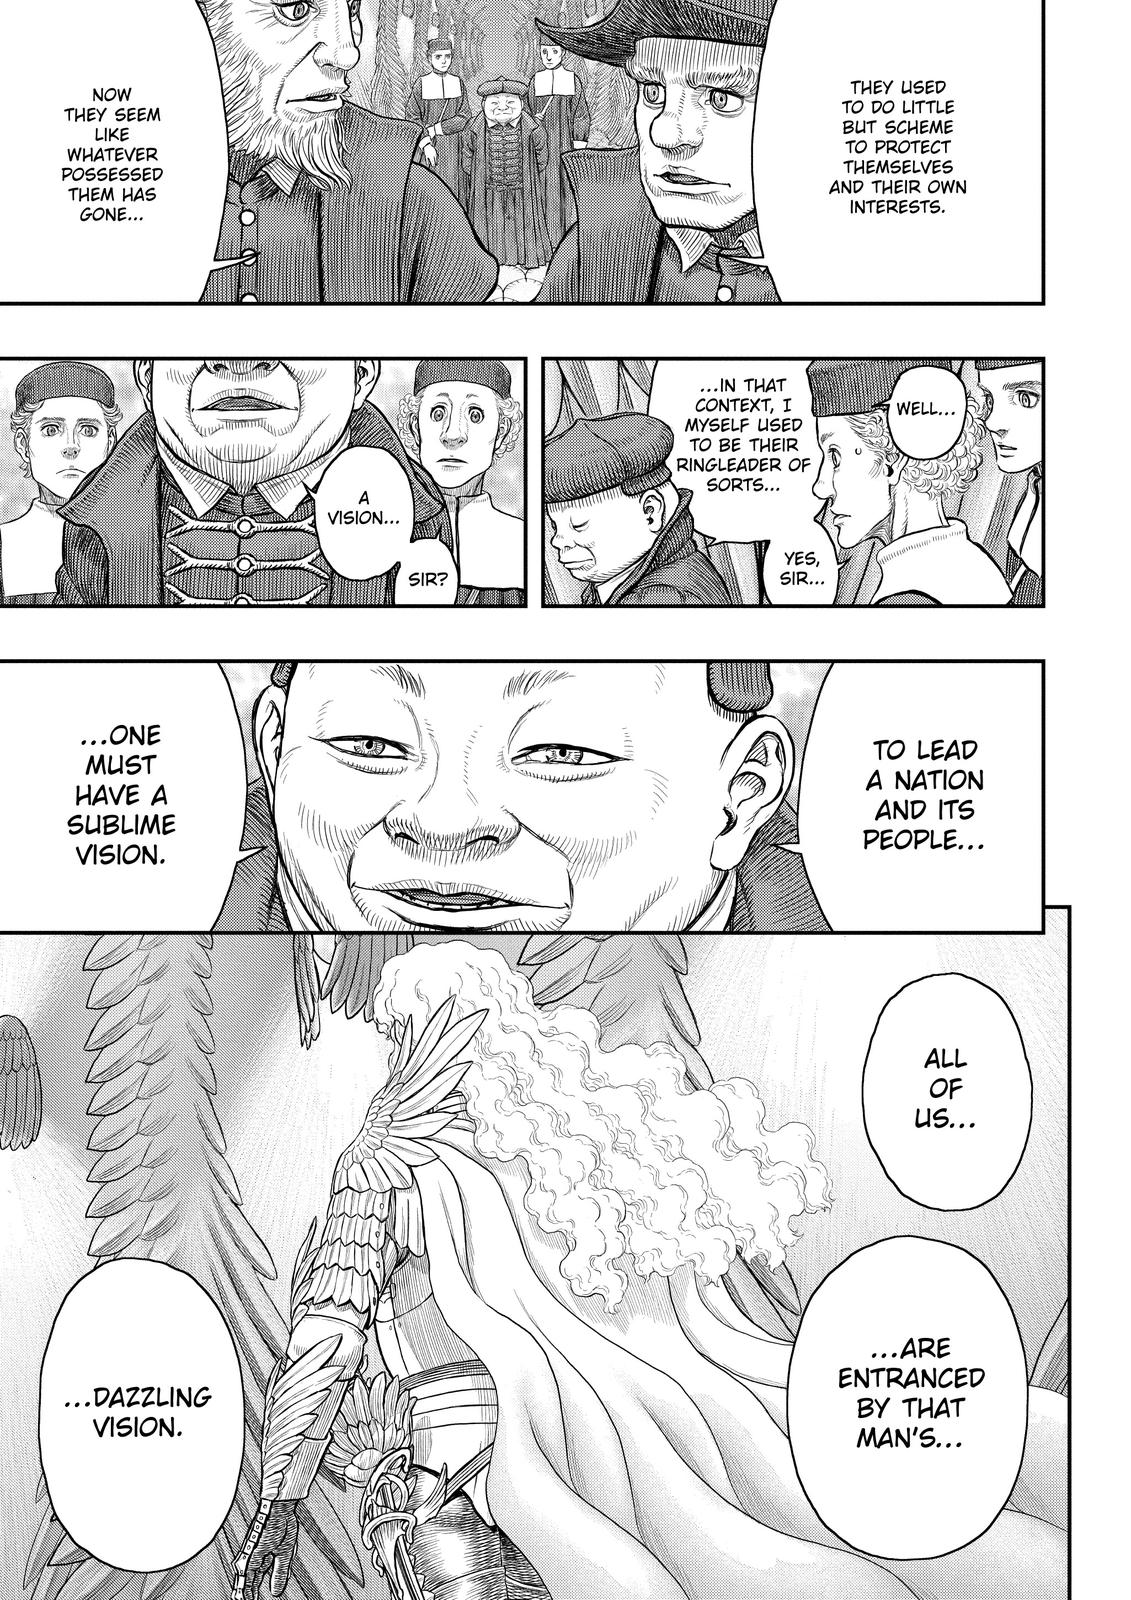 Berserk Manga Chapter 358 image 24